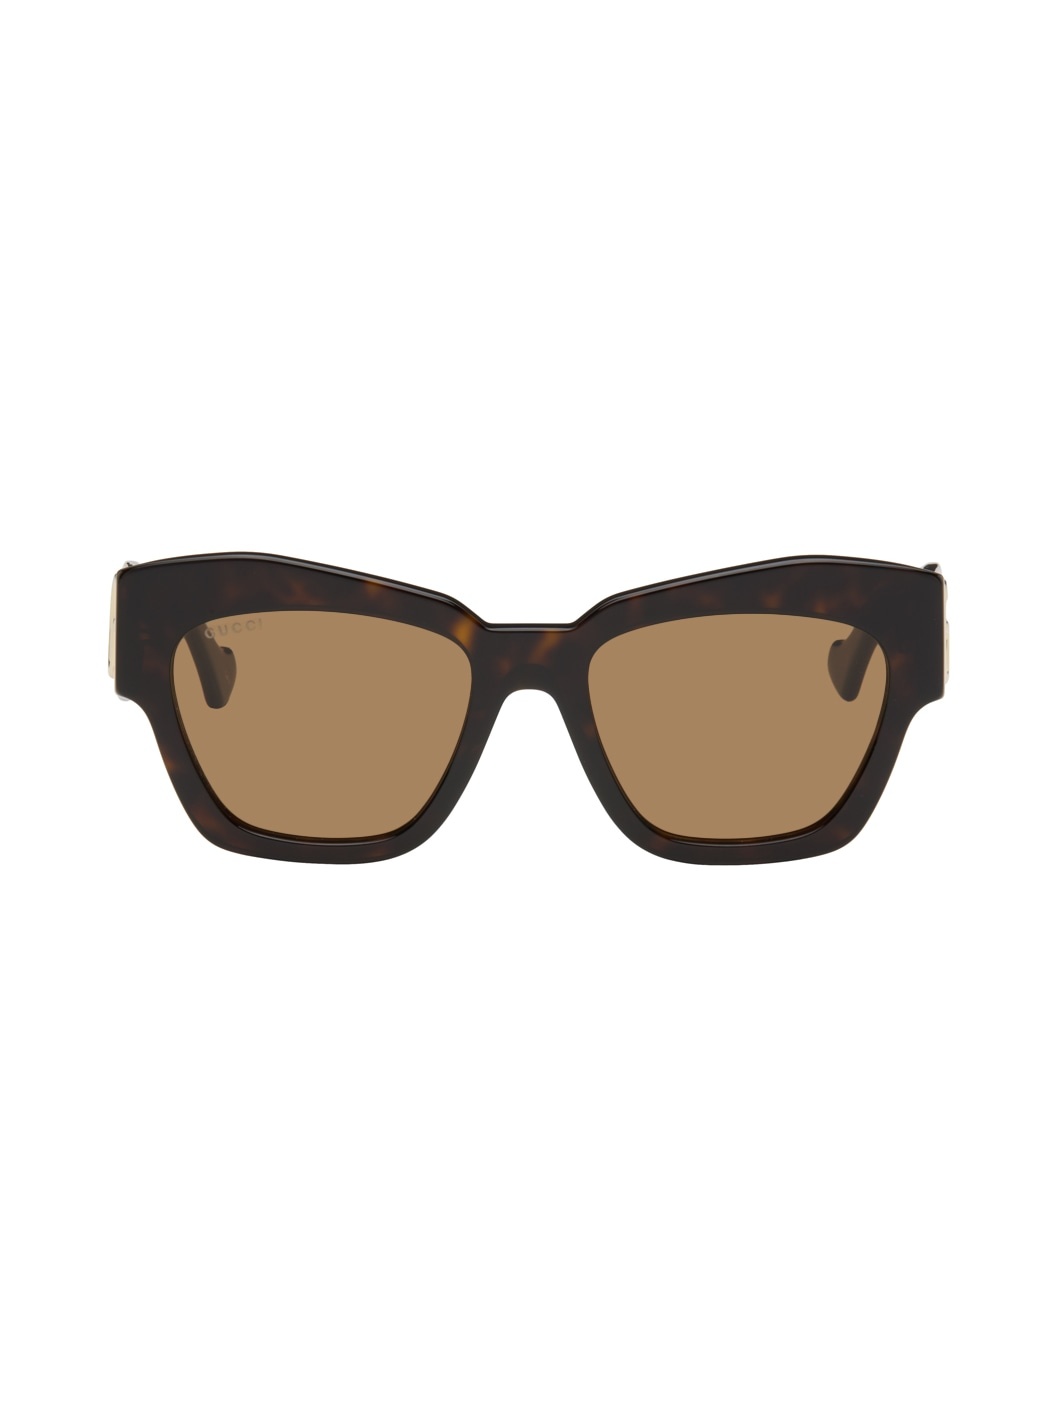 Tortoiseshell Cat-Eye Sunglasses - 1